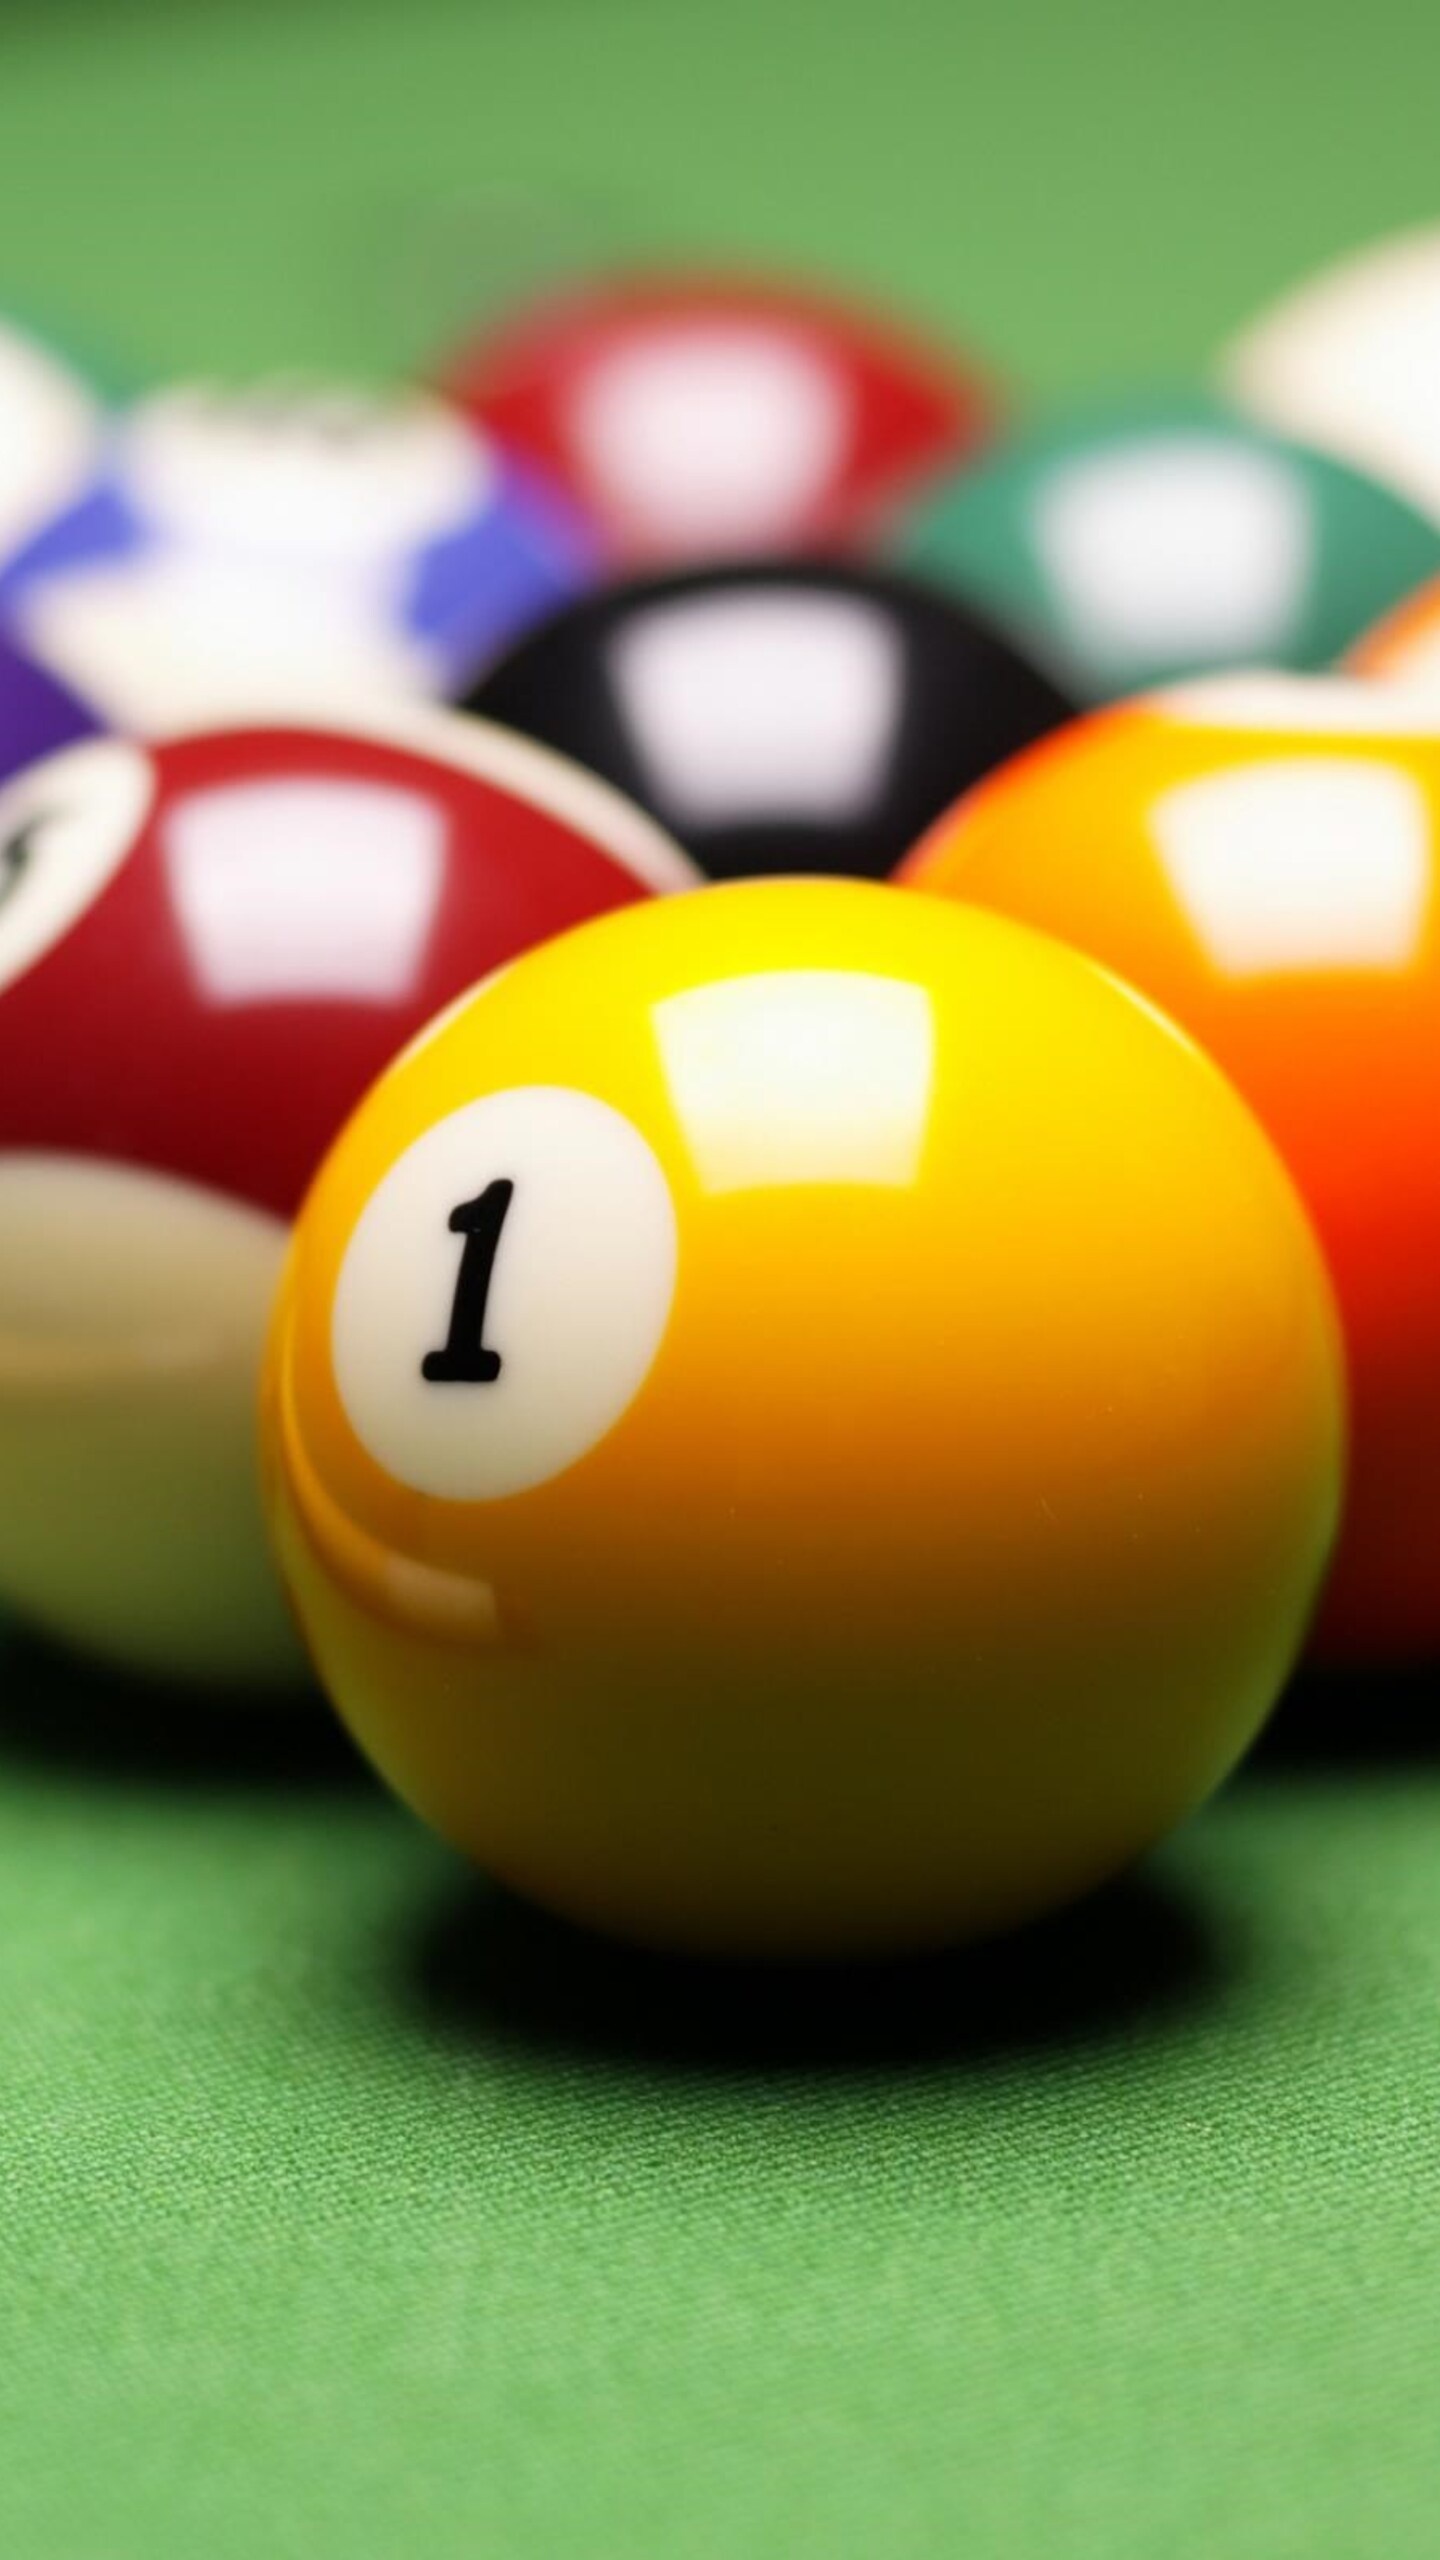 Billiards: Classic eight-ball, Seven solid-colored balls, seven striped balls, and the black 8 ball, Billiard balls. 1440x2560 HD Background.